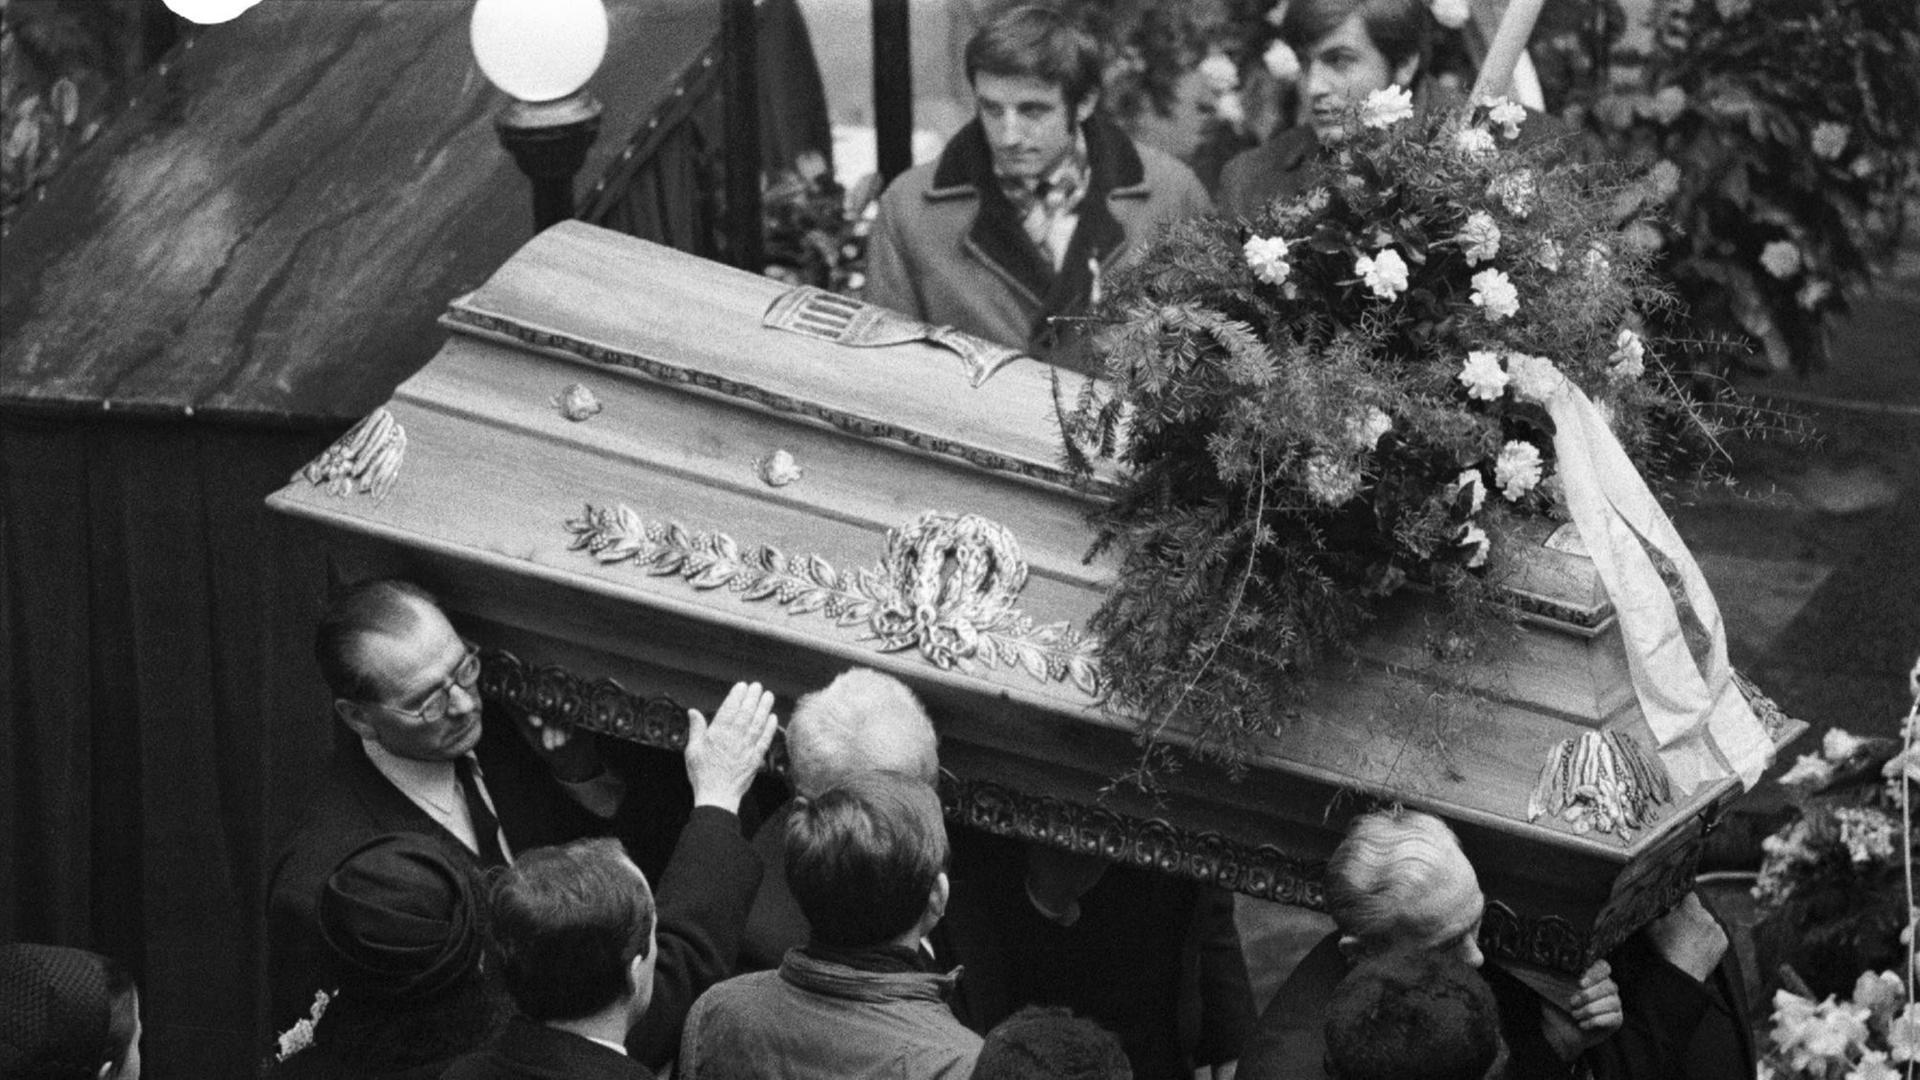 Zeitgenössisches Foto der Beerdigung des Studenten Jan Palach in Prag - ein Sarg wird im Innenhof des Karolinums, der Karlsuniversität, durch eine Menge getragen.